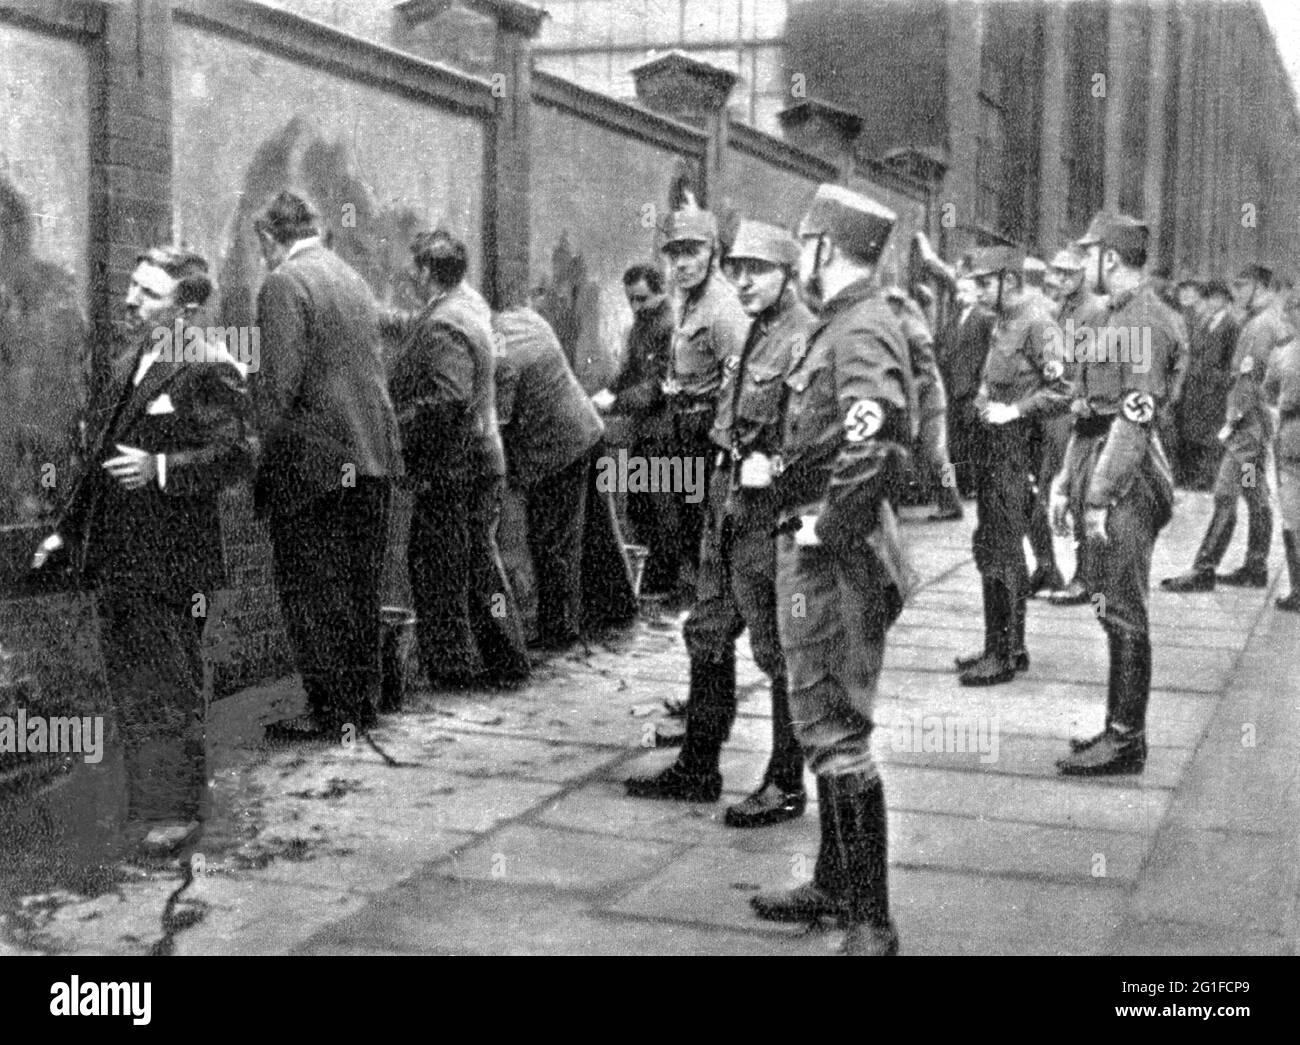 Nazionalsocialismo, criminalità grave, arresto di comunisti e socialisti dopo il 27.2.1933 da parte di membri del battaglione tempesta (SA), SOLO EDITORIALE-USO-SOLO Foto Stock